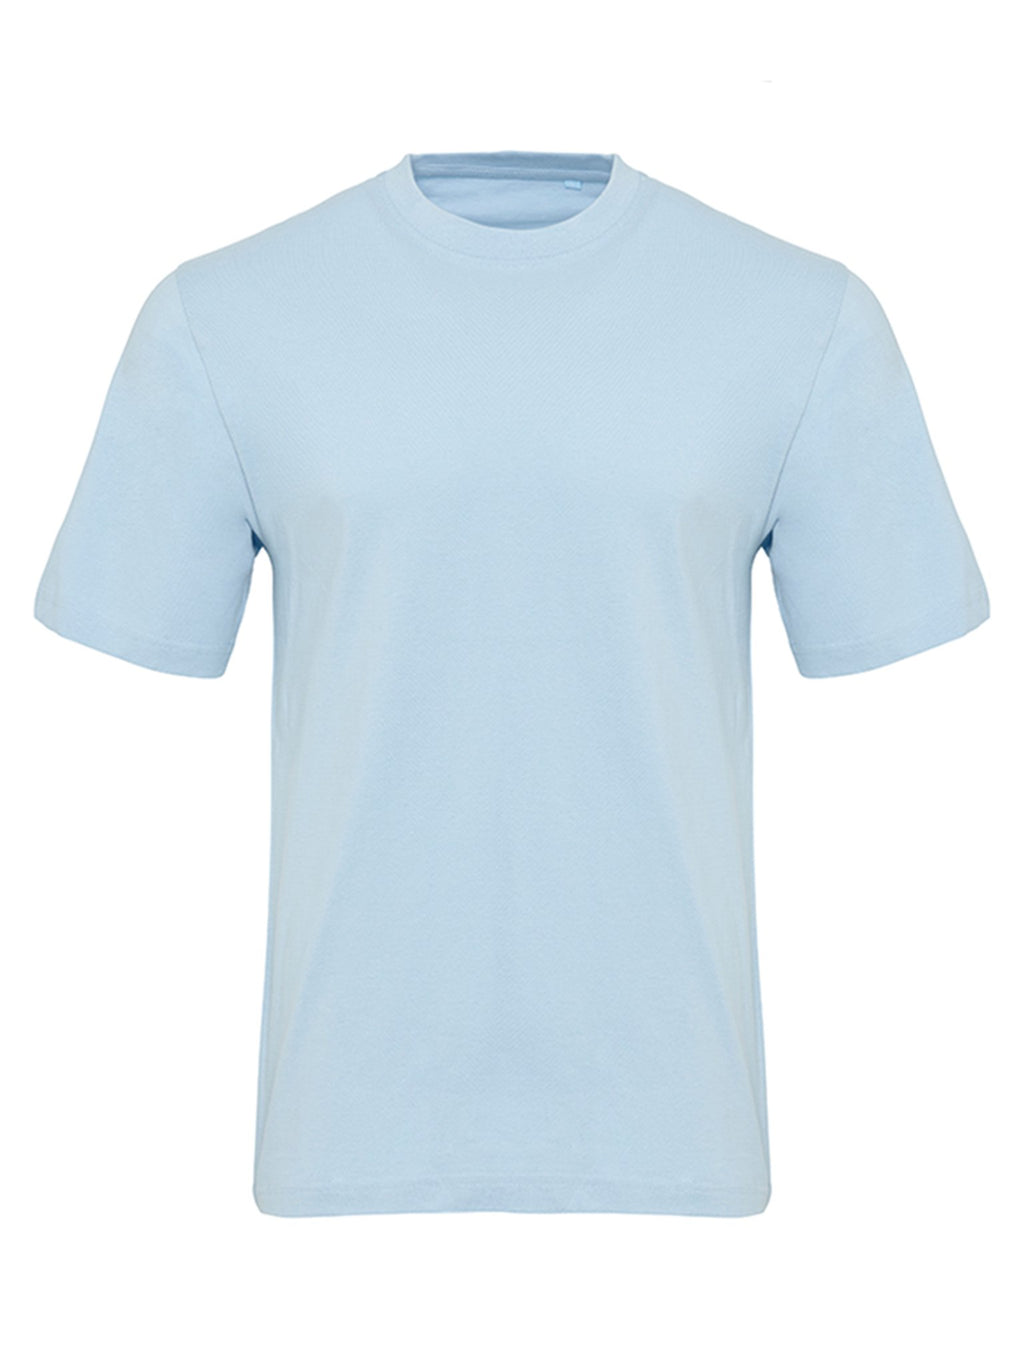 有机基本T恤 - 浅蓝色